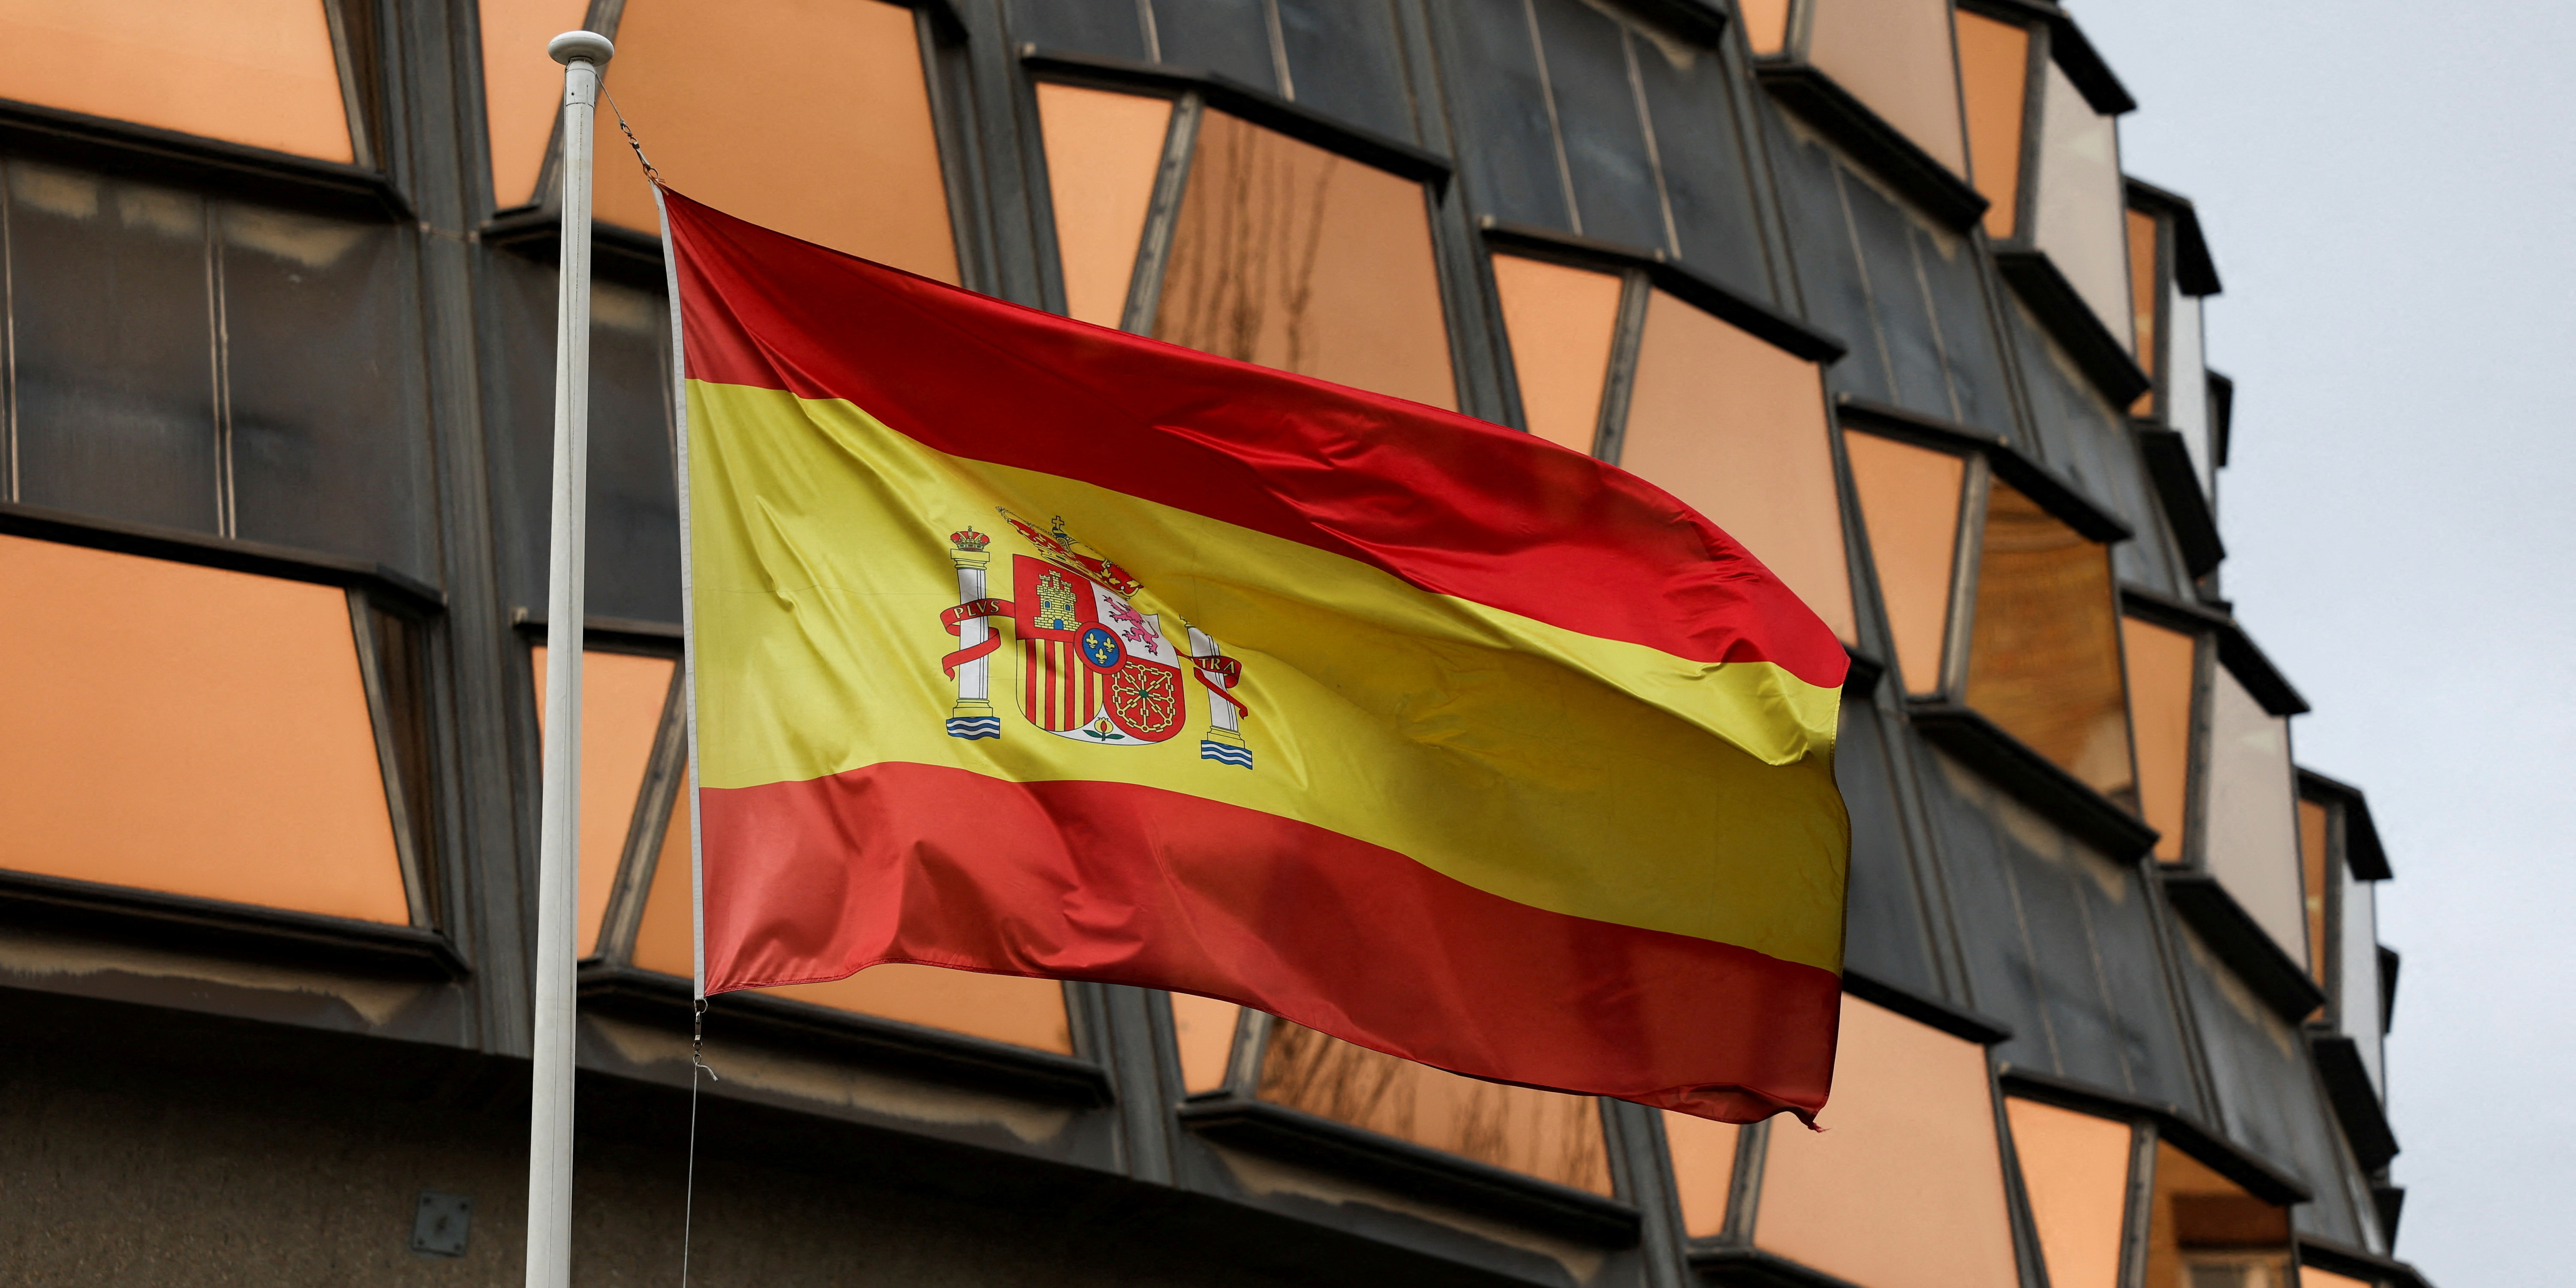 Endettement : l'Espagne s'engage à repasser son déficit public sous la barre des 3% dès 2024